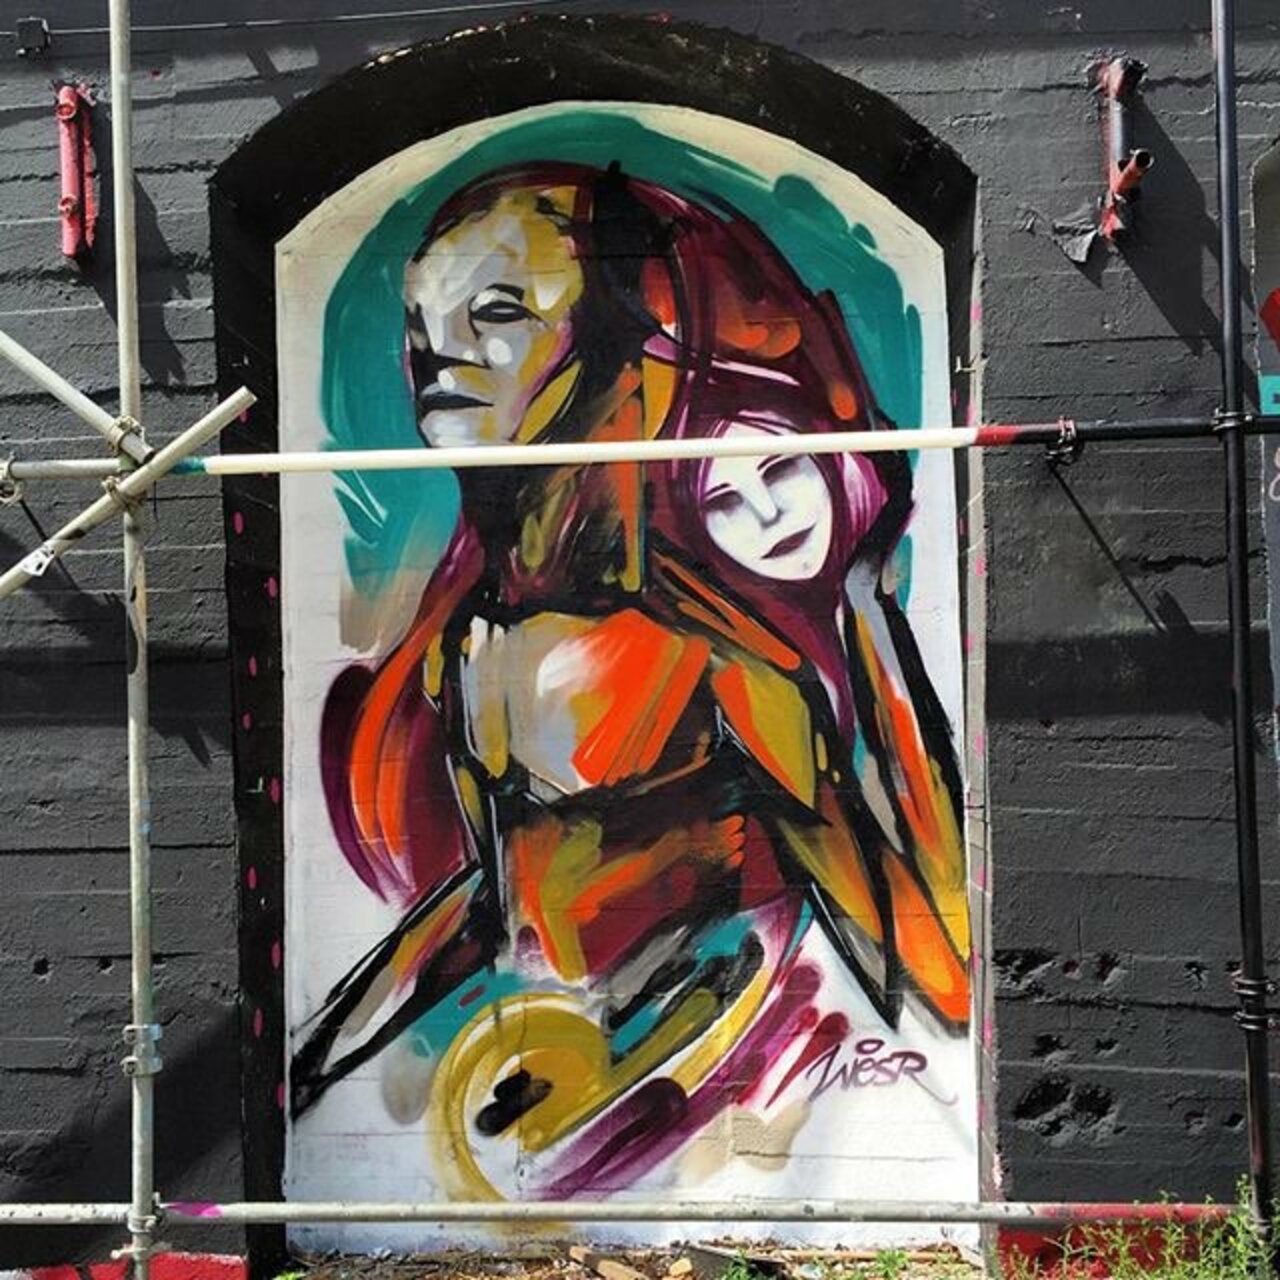 Artist: @w3sr 'One more reason to be alive'  #streetart #streetartberlin #art #graffiti #gatekunst #2015 #urbanart https://t.co/ot7zQJSyxZ